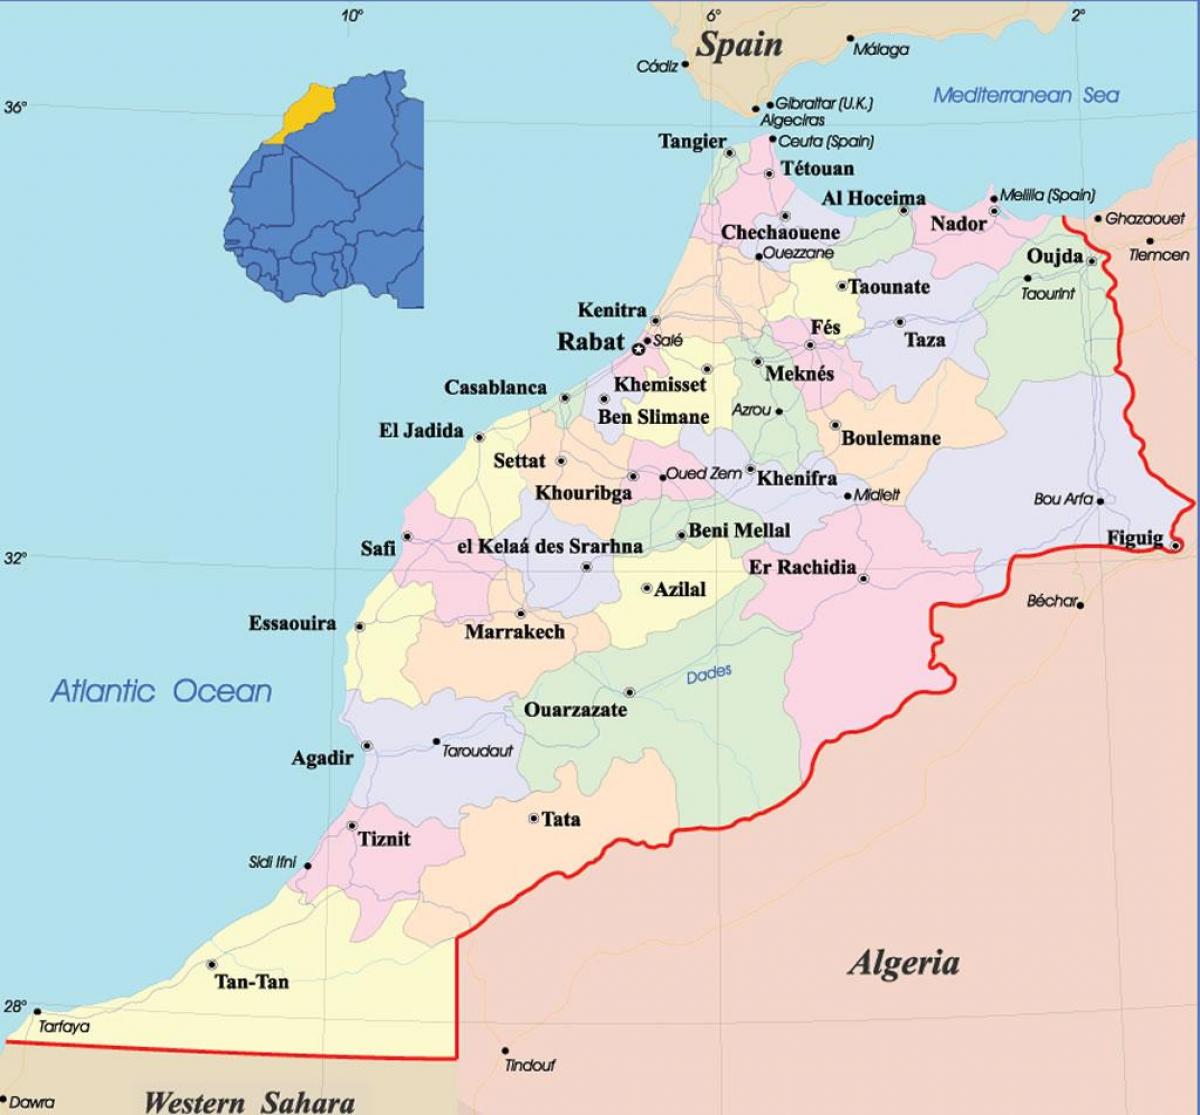 Mapa administrativo de Marruecos